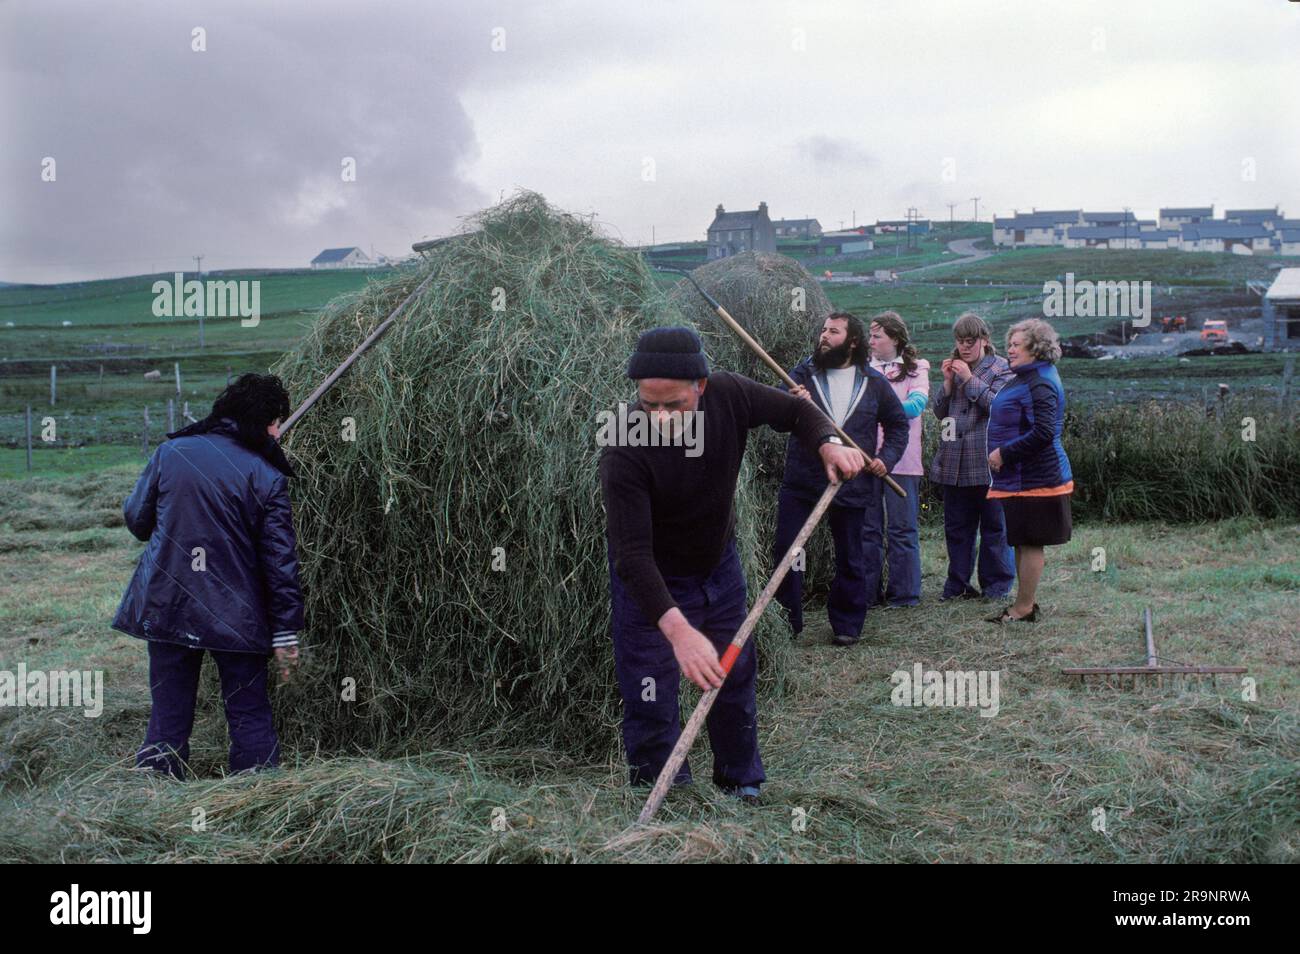 Crofting Shetland Islands. Crofters, marito, moglie e amici di famiglia che costruiscono una pila di fieno. La nuova industria petrolifera si trova in lontananza sulla collina. Shetlands Mainland, Isole Shetland, Scozia, circa 1979. REGNO UNITO 1970S HOMER SYKES Foto Stock